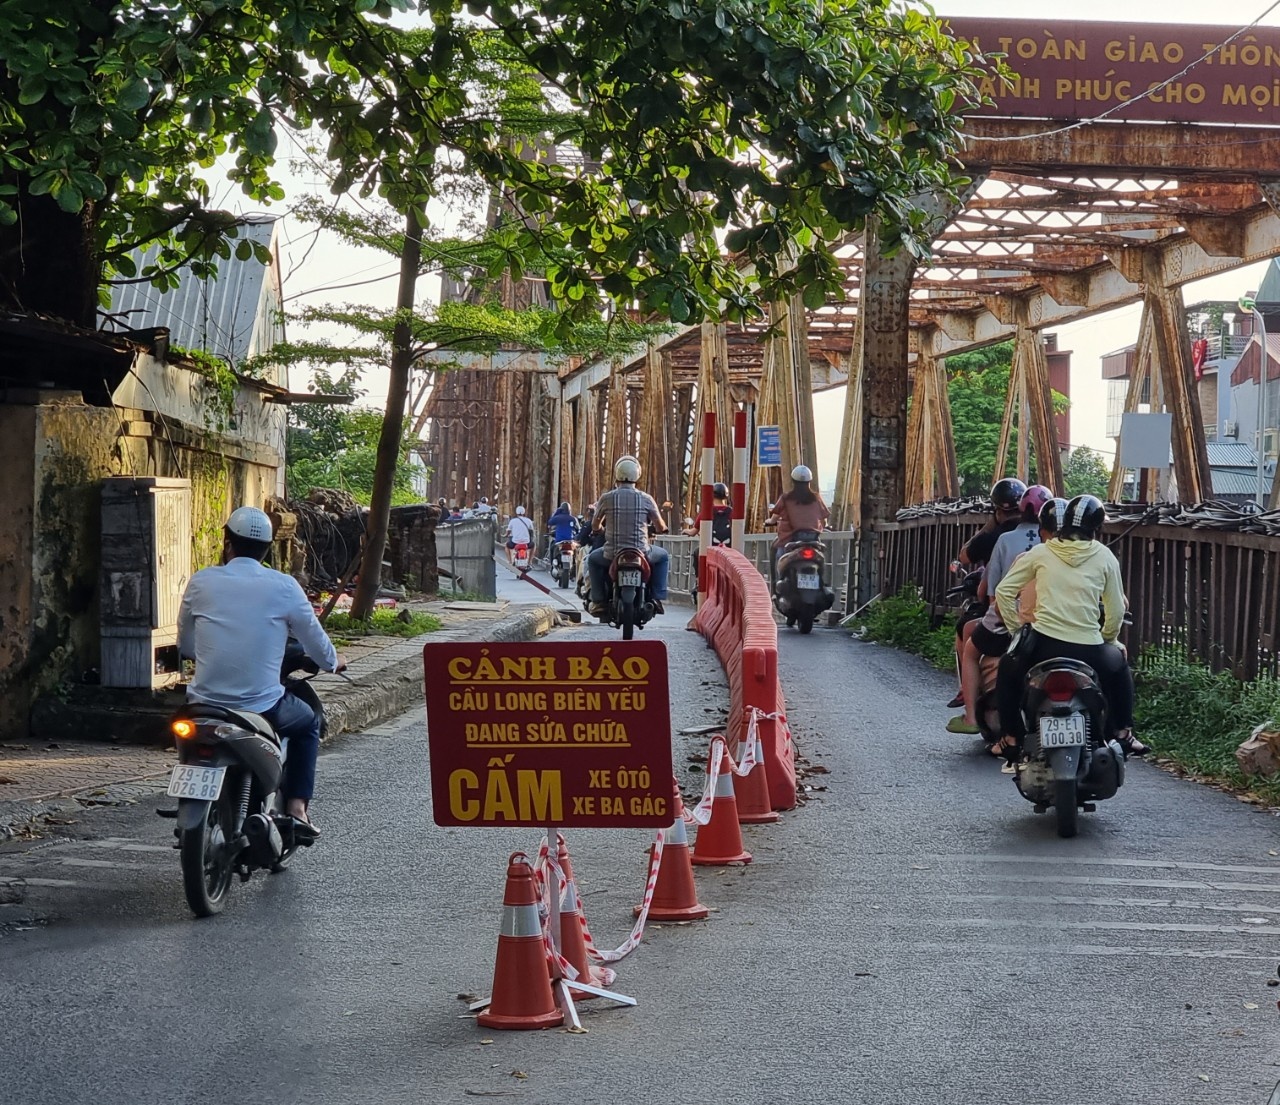 Cầu Long Biên được lắp dải phân cách ngăn xe ba gác - Ảnh 1.